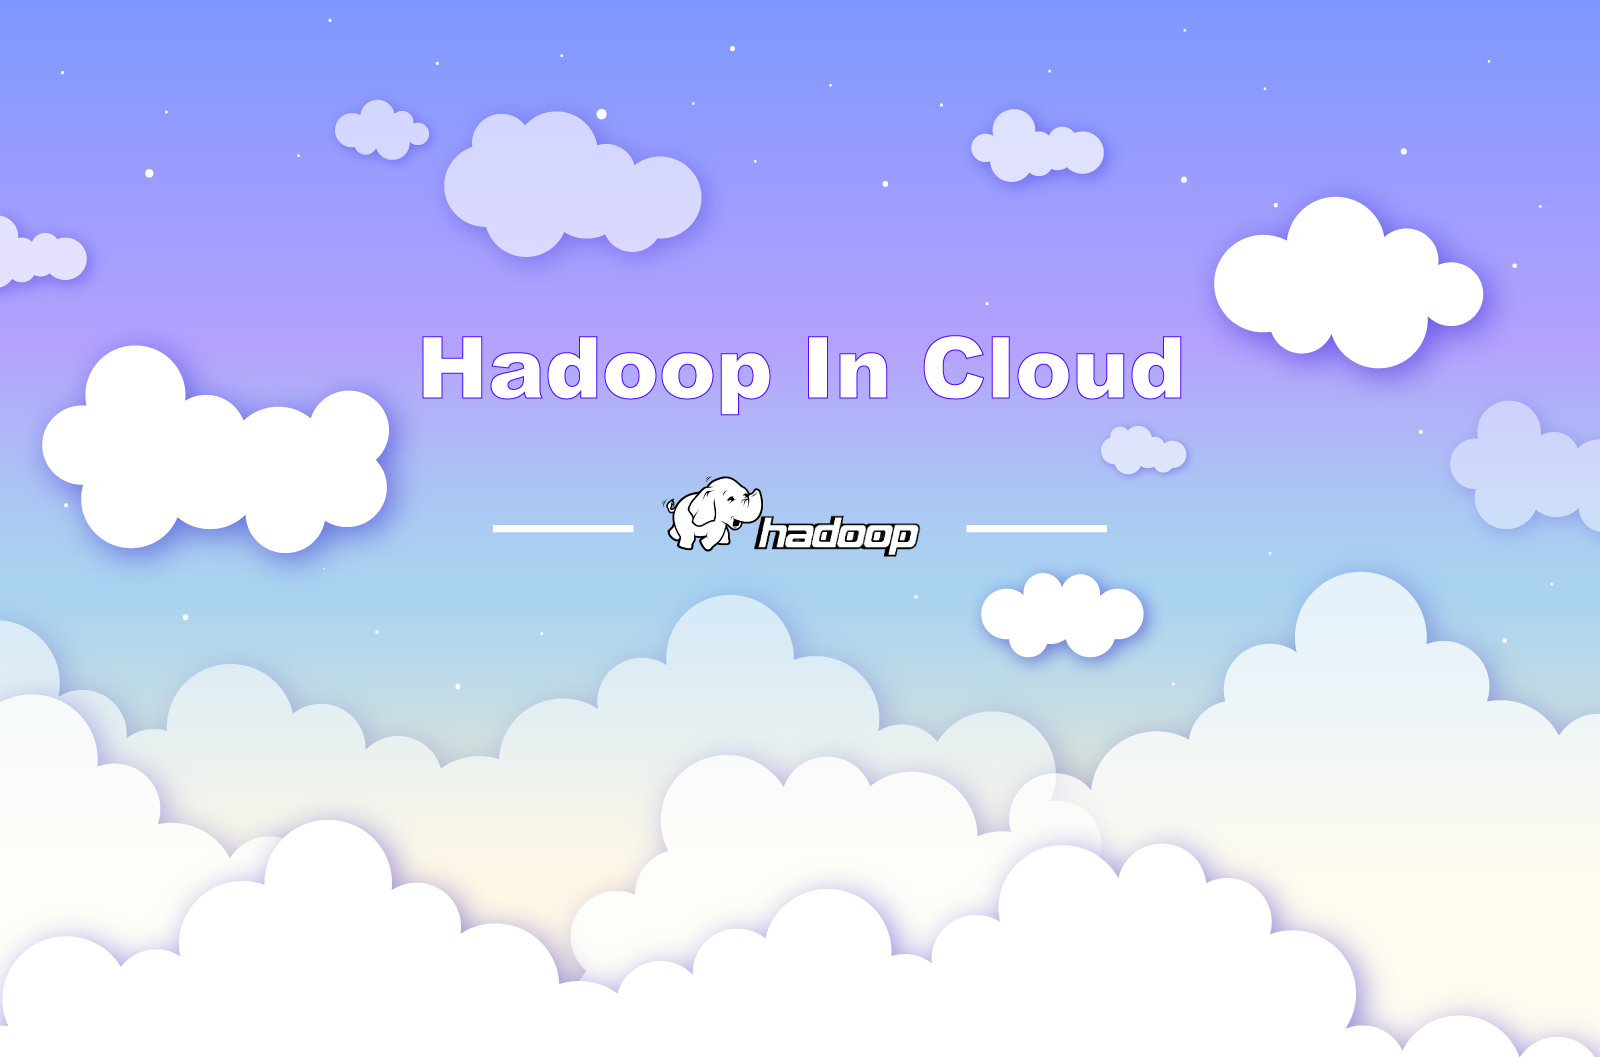 Hadoop in Cloud — Plenty of Choices